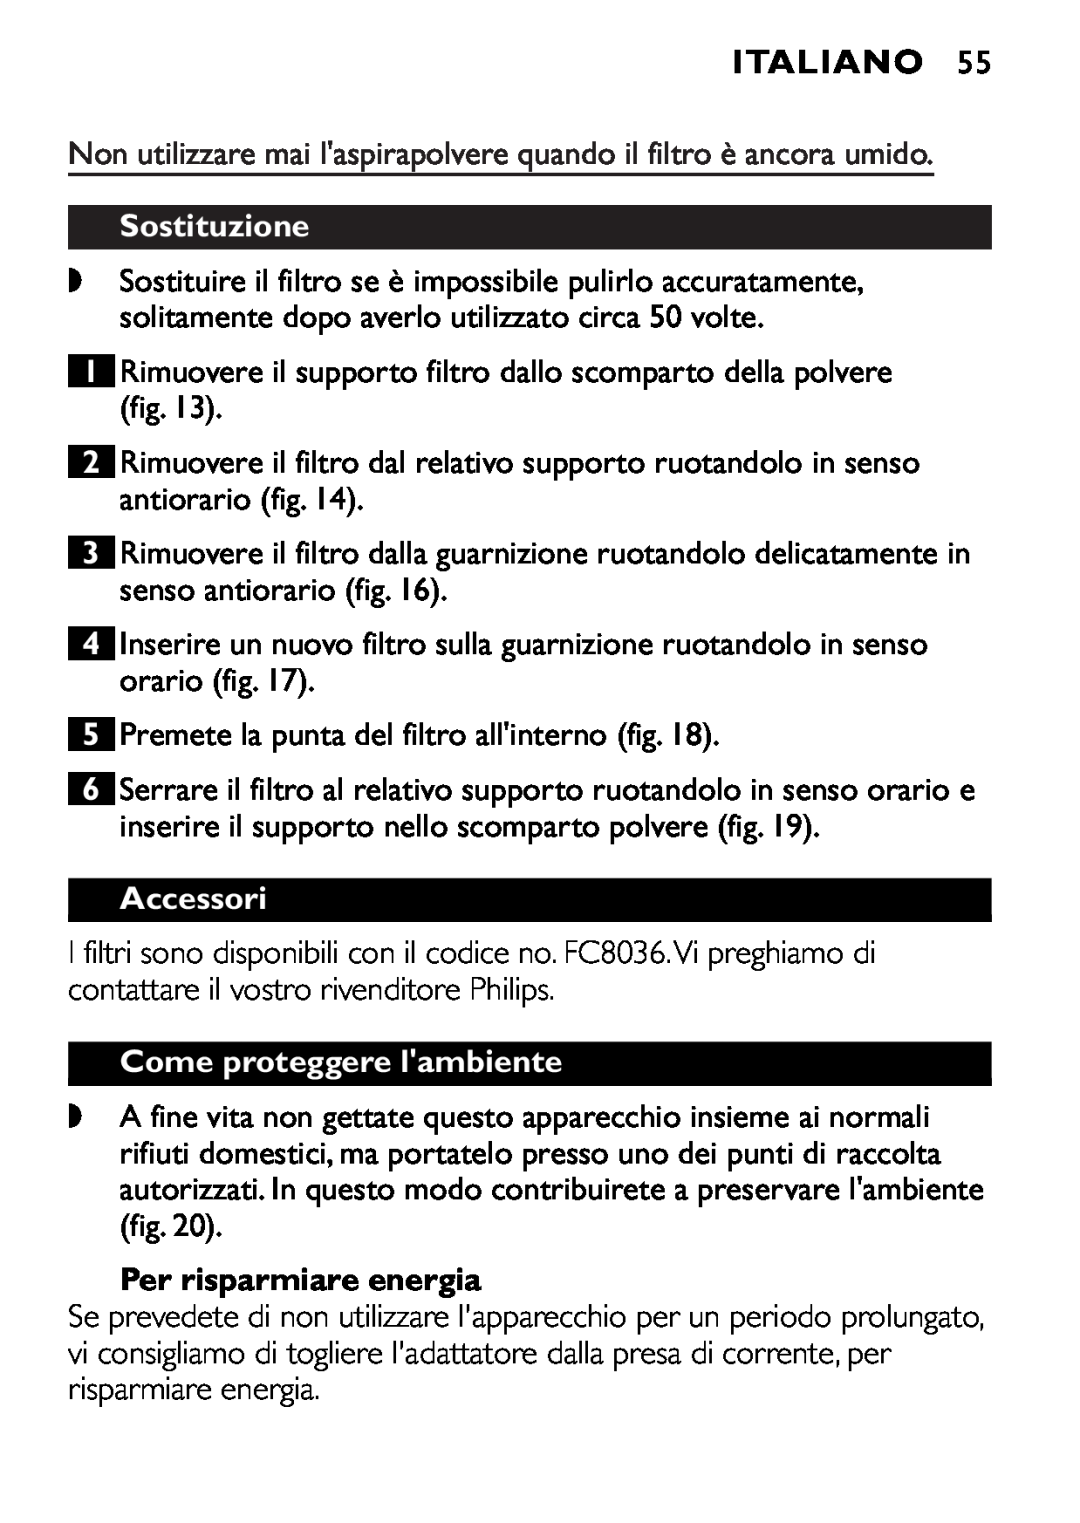 Philips FC6055 manual Sostituzione, Accessori, Come proteggere lambiente, Per risparmiare energia, Italiano 